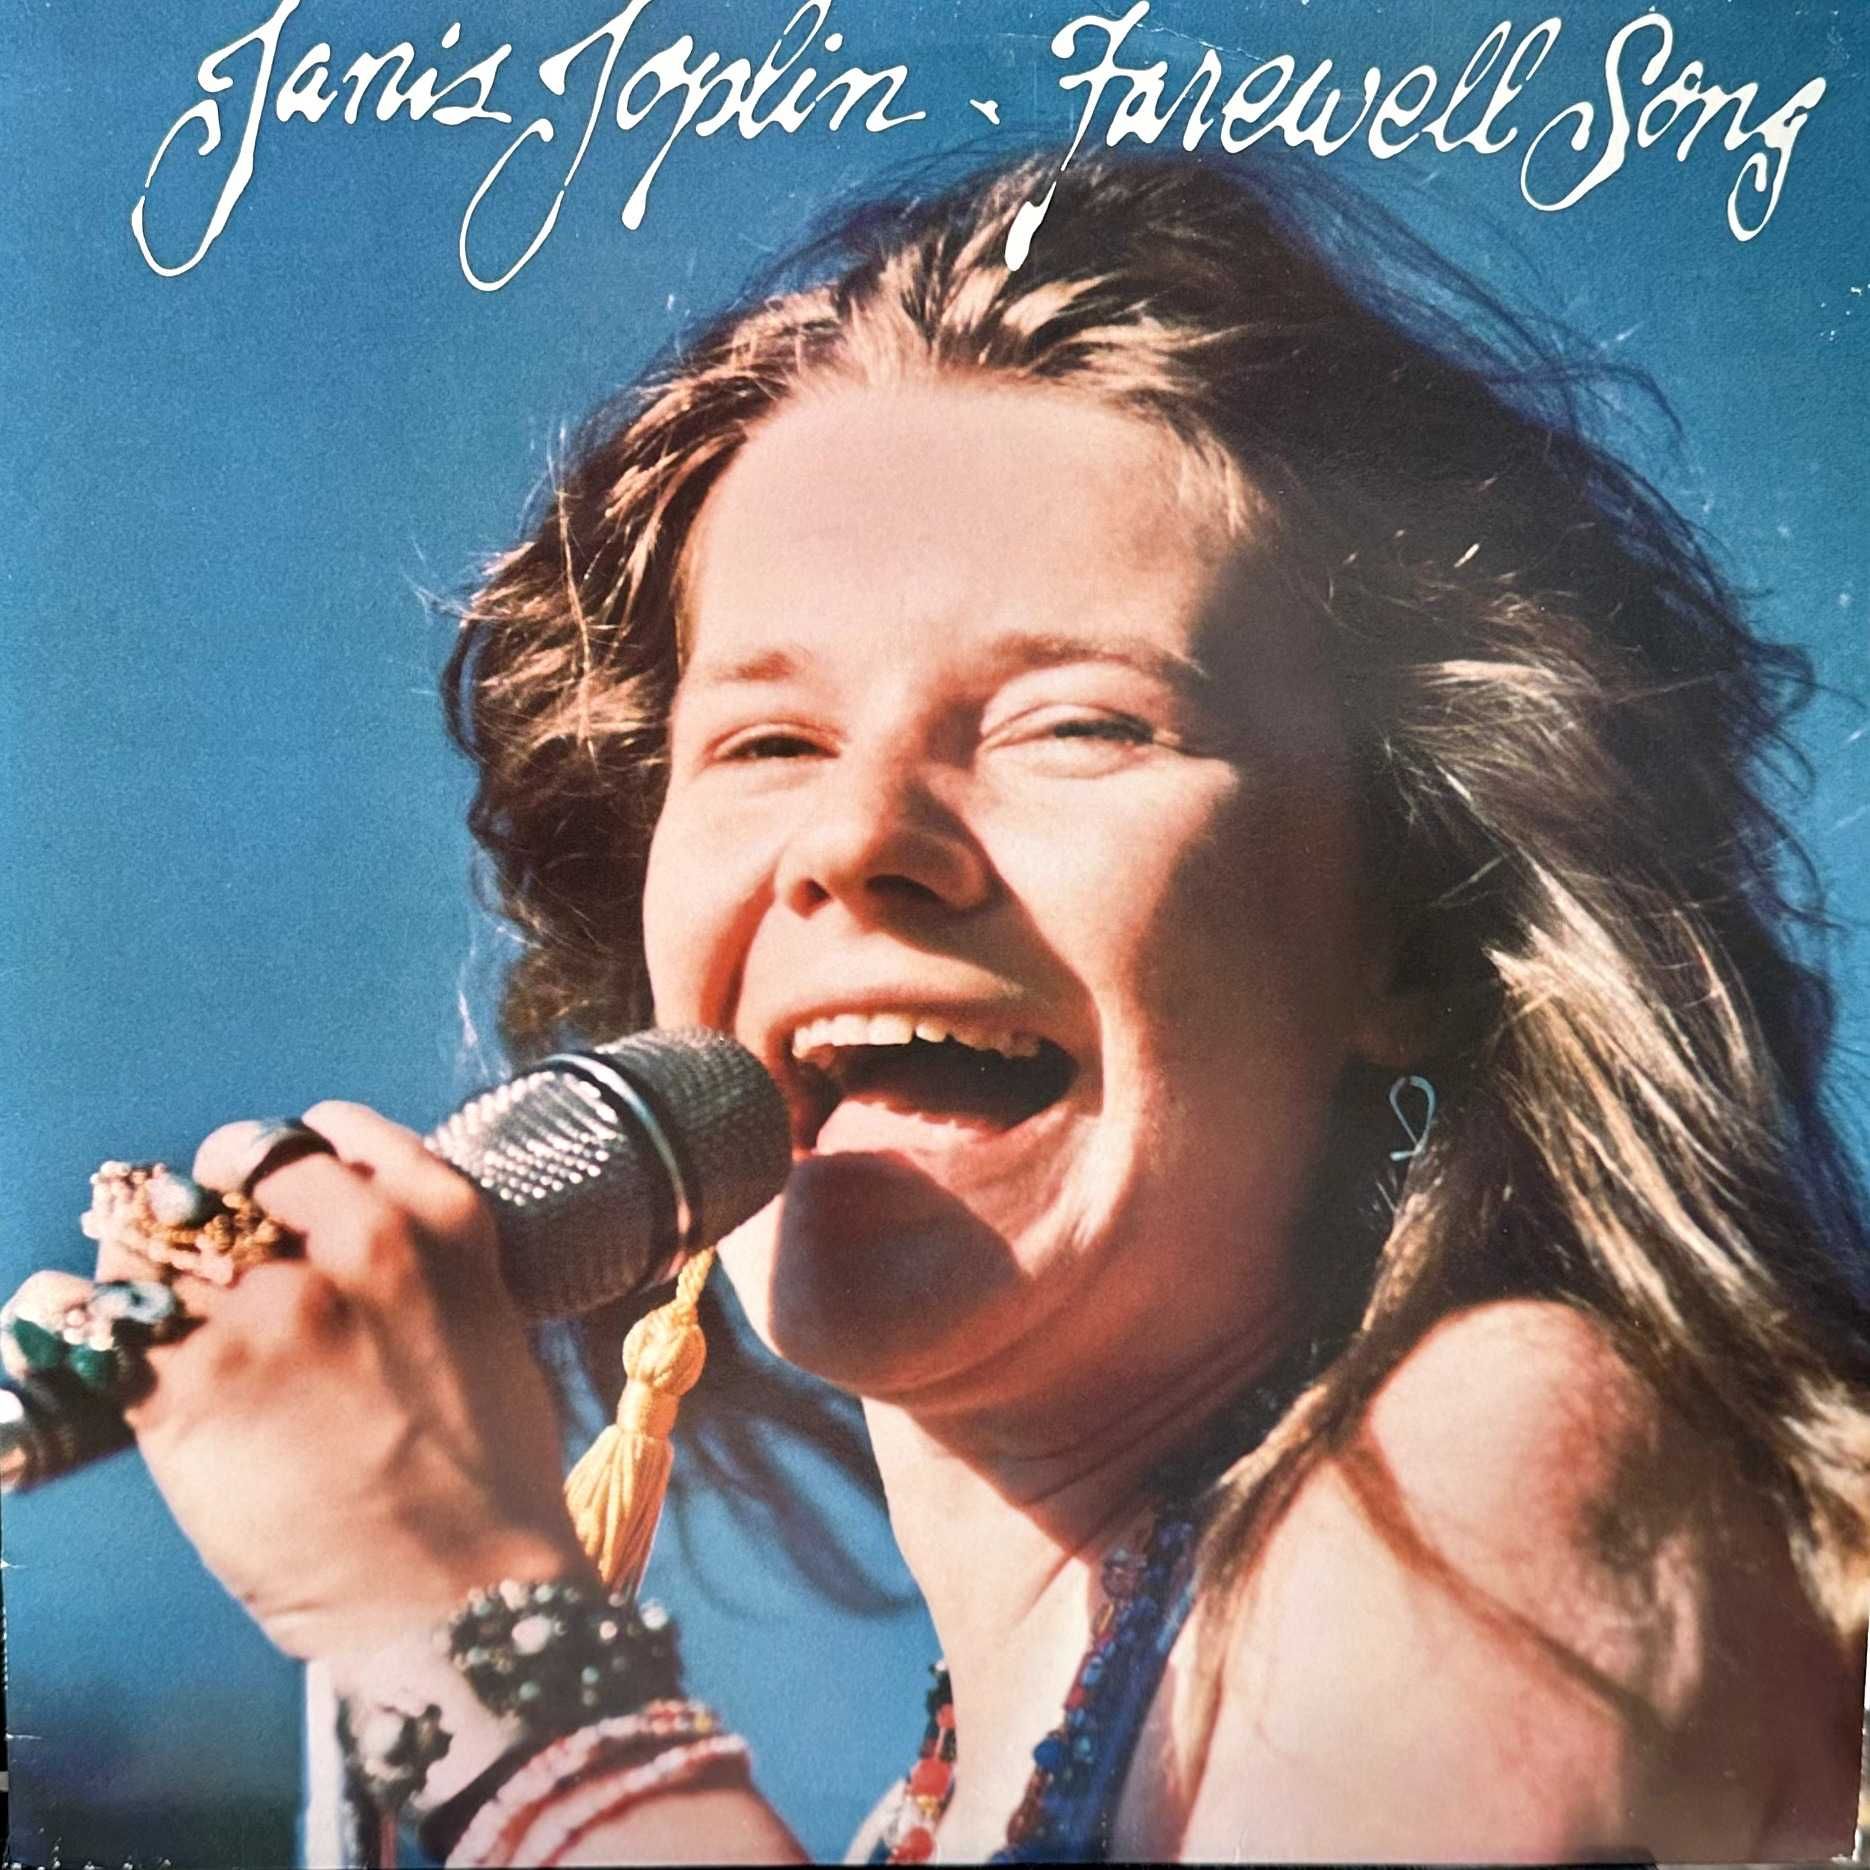 Janis Joplin - Farewell Song (Vinyl, 1982, UK)